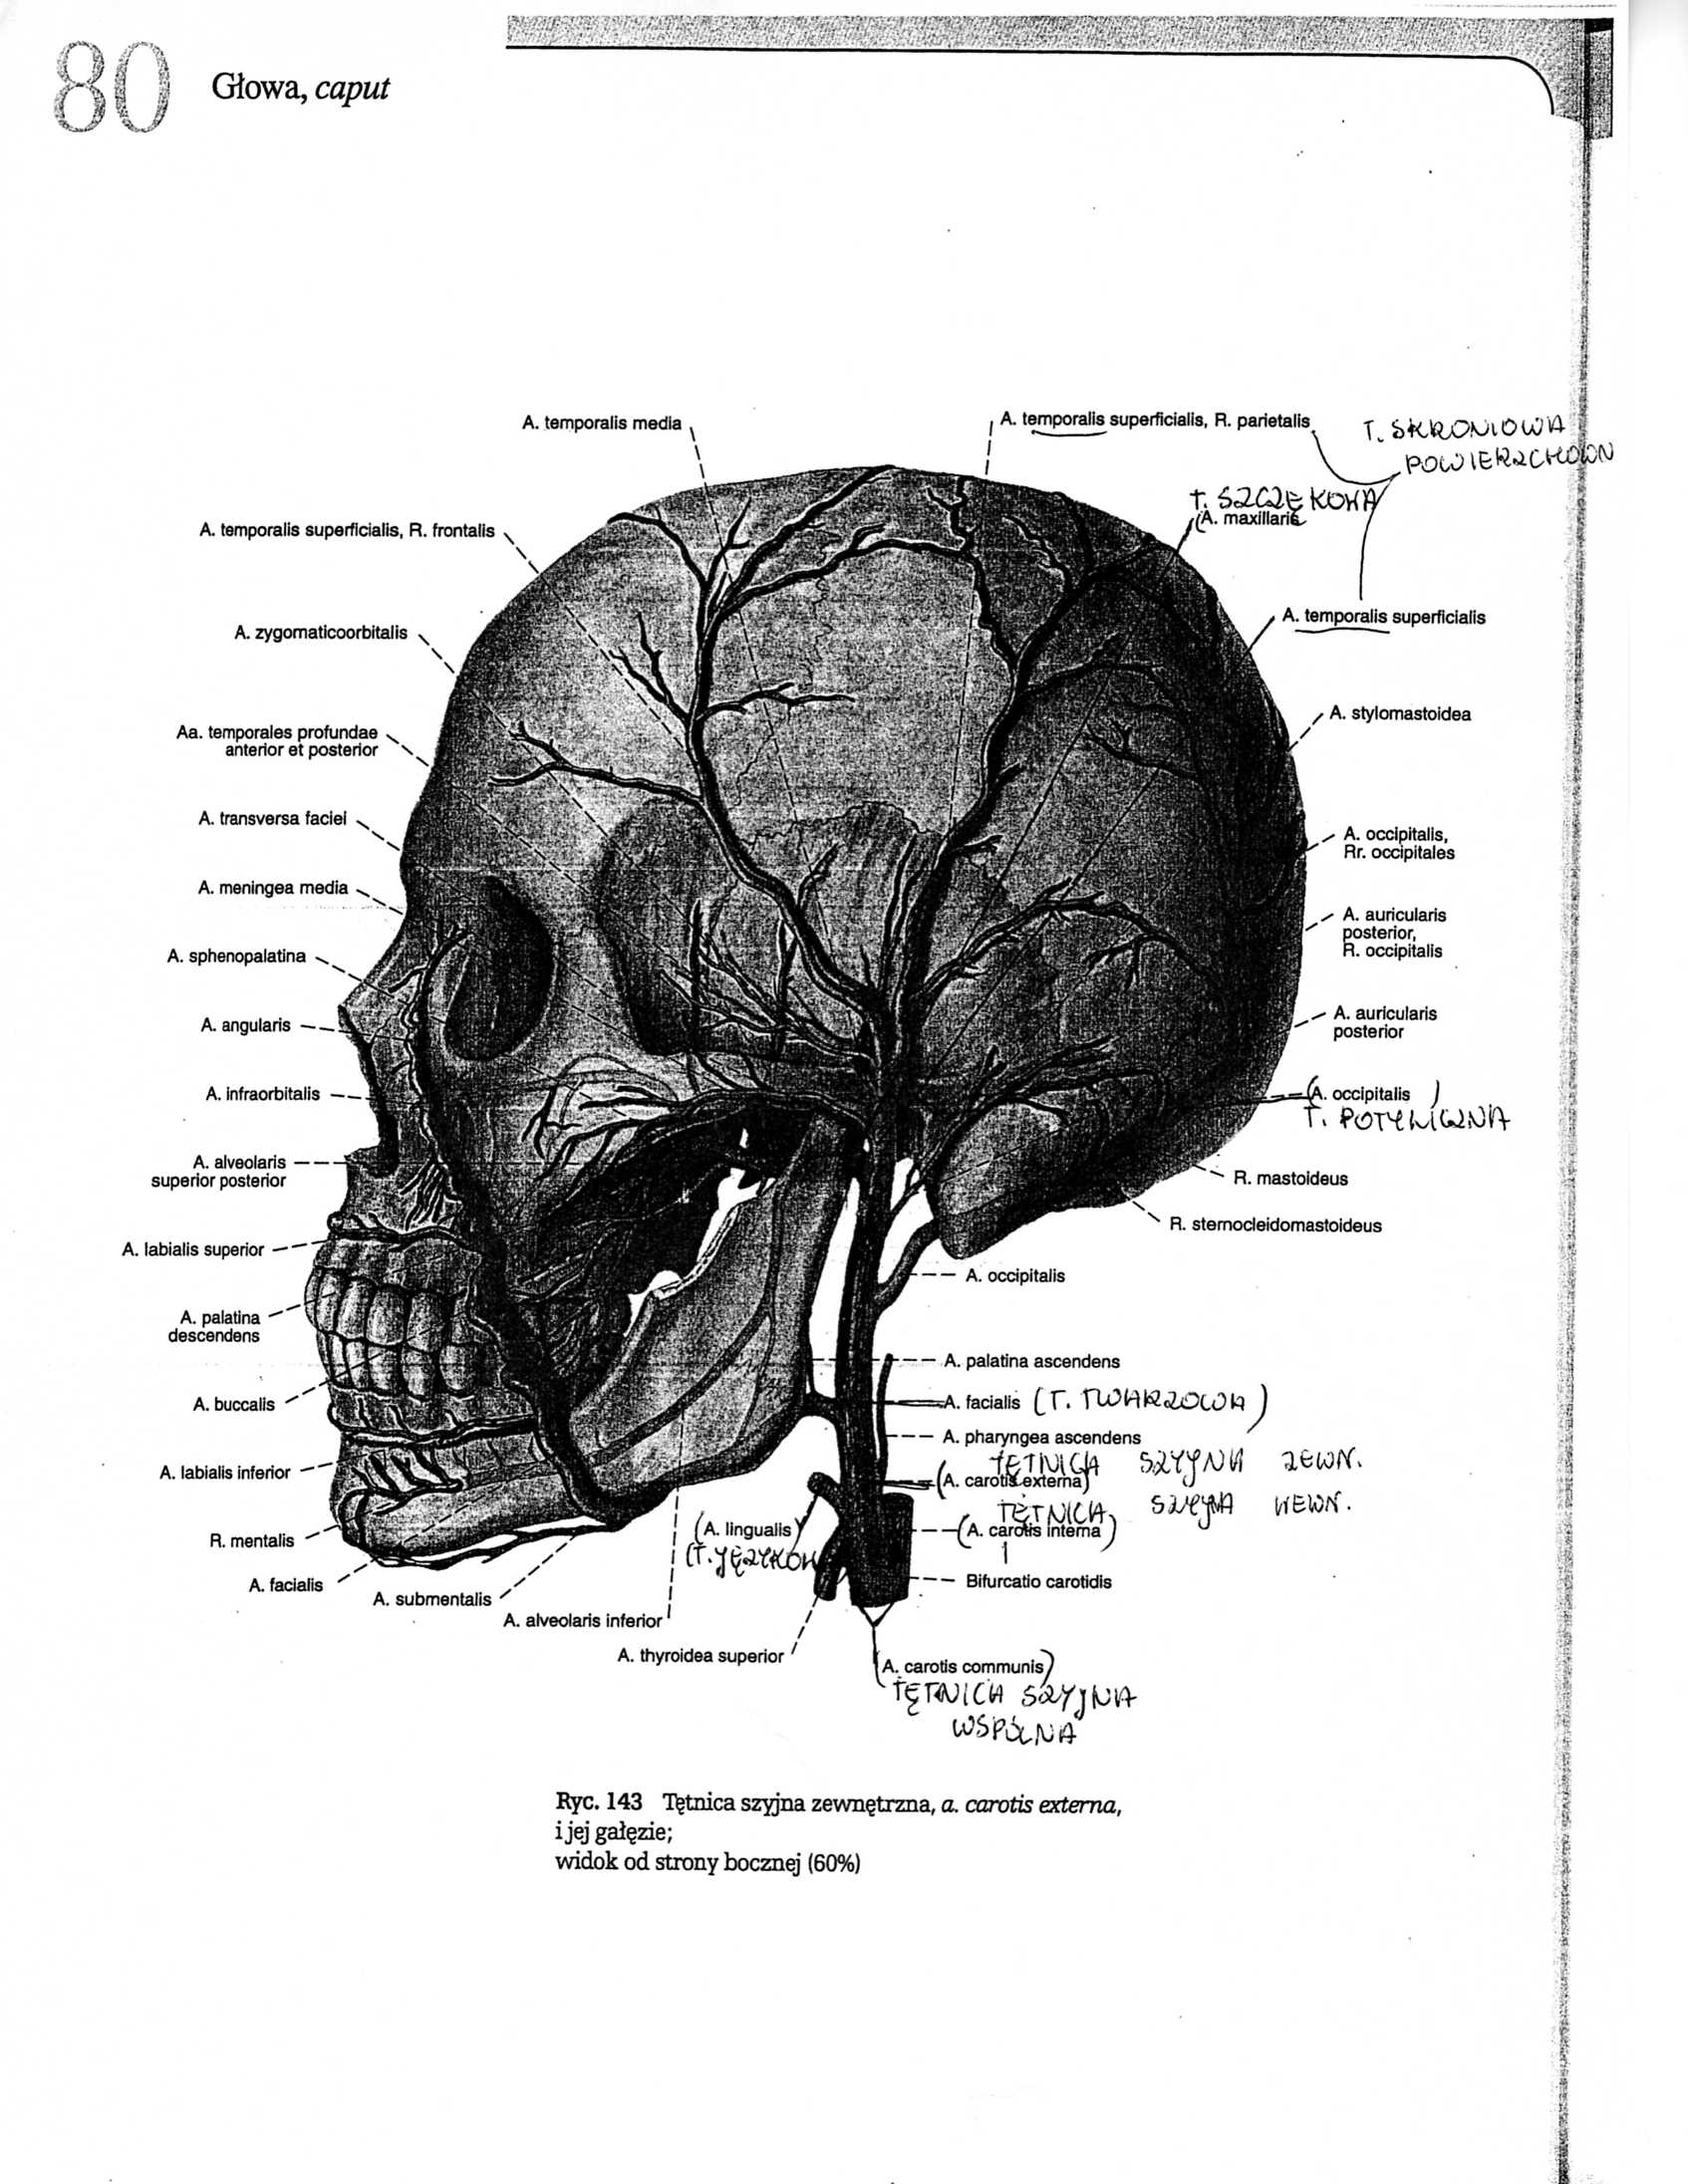 Anatomia - anatomia010.jpg